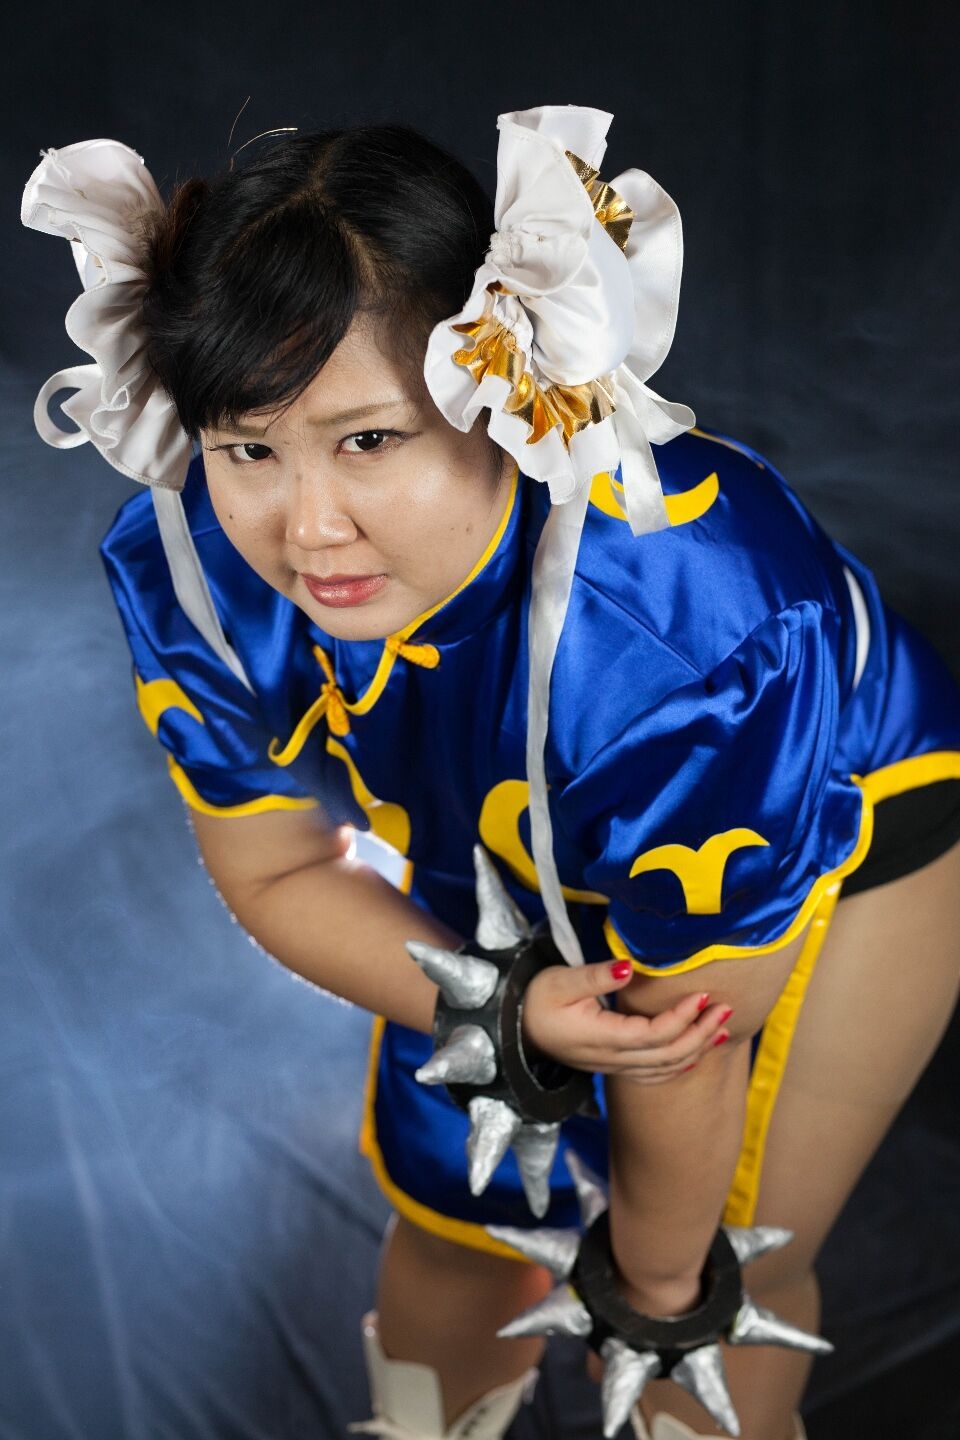 (渡辺さくらん) FIGHT FAT LADY (Sakuran Watanabe) (Mai Shiranui - Fatal Fury) (Chun-Li - Street Fighter) 44